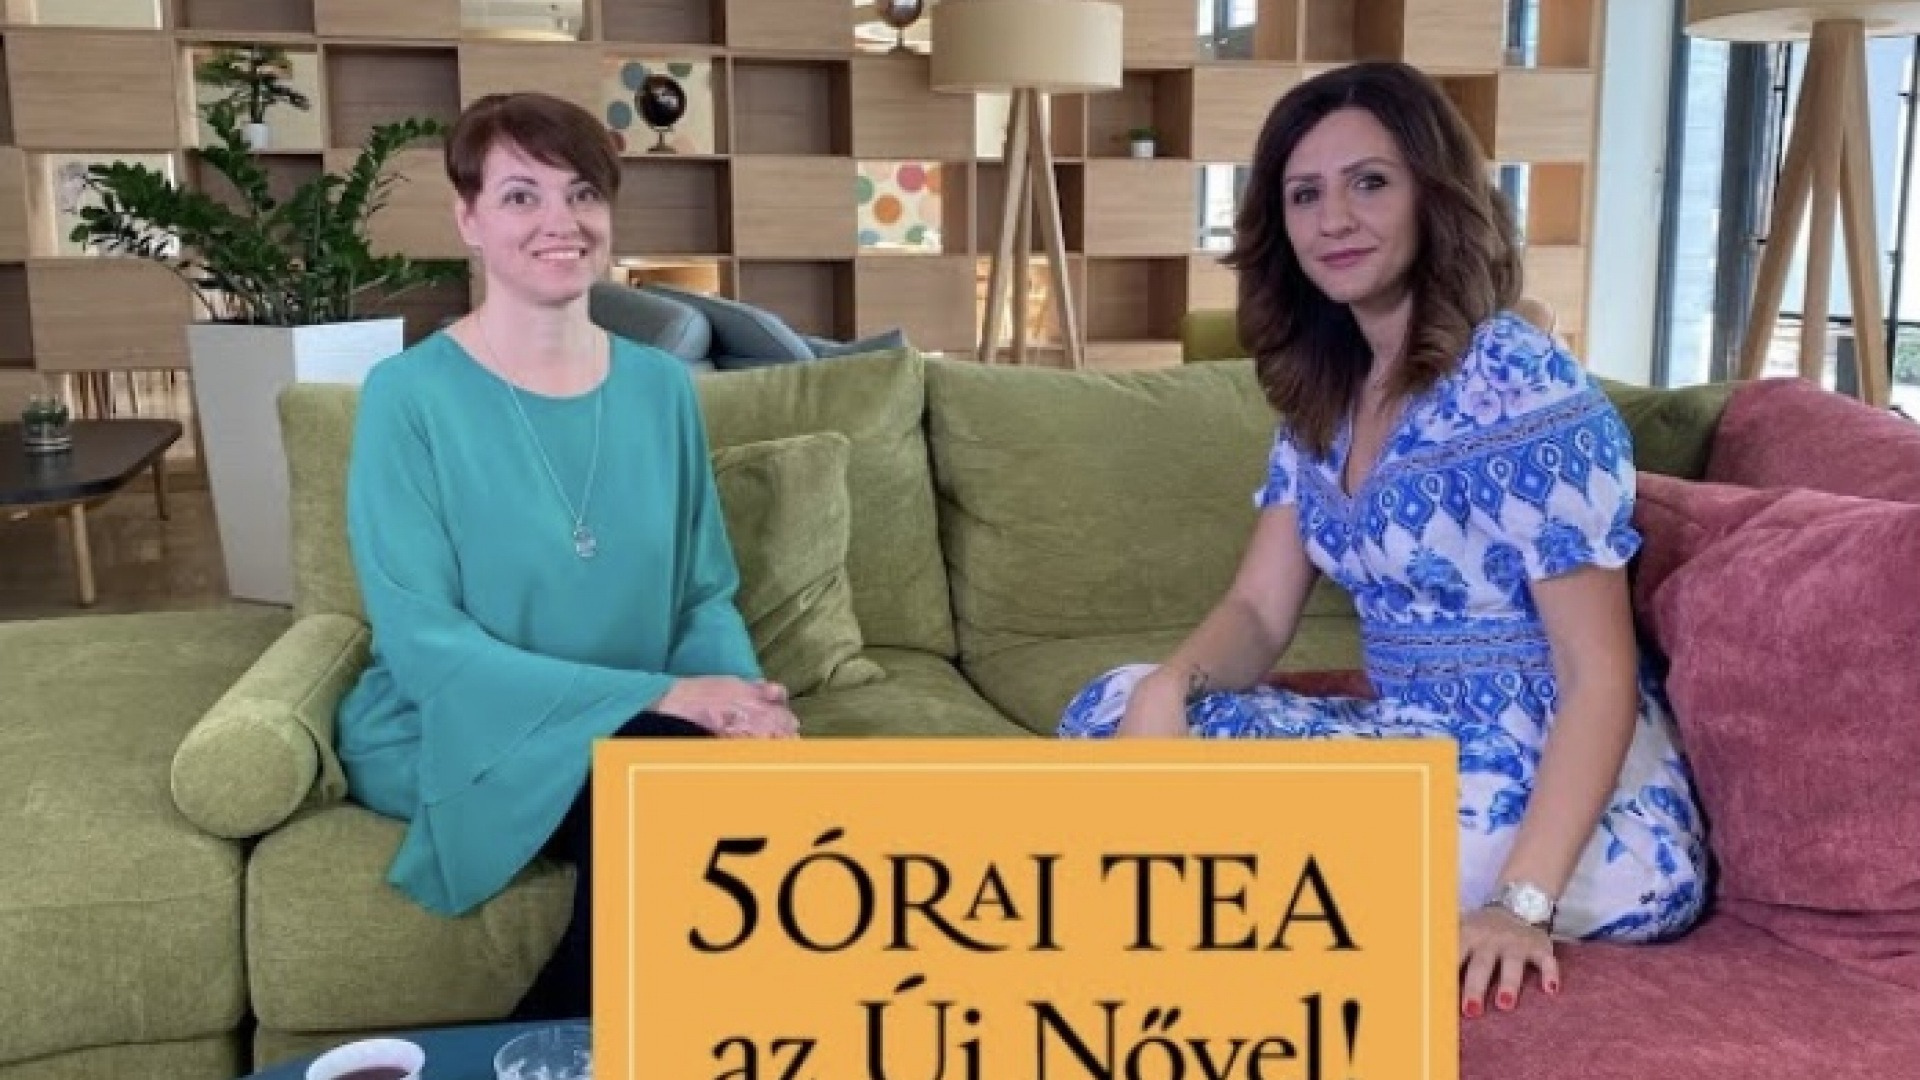 5órai tea az Új Nővel – Vedd ölbe, ringasd, énekelj!